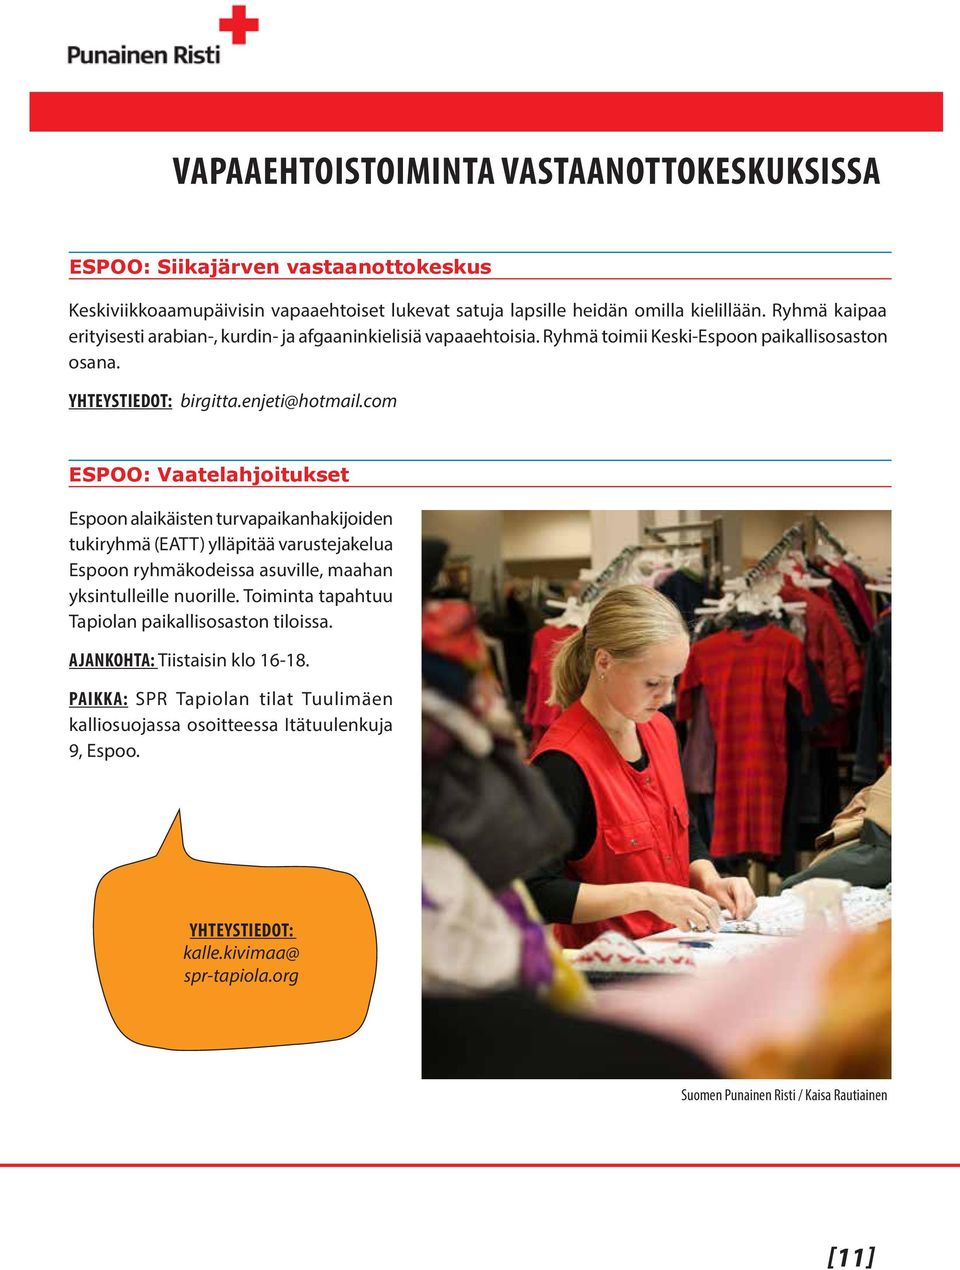 com ESPOO: Vaatelahjoitukset Espoon alaikäisten turvapaikanhakijoiden tukiryhmä (EATT) ylläpitää varustejakelua Espoon ryhmäkodeissa asuville, maahan yksintulleille nuorille.